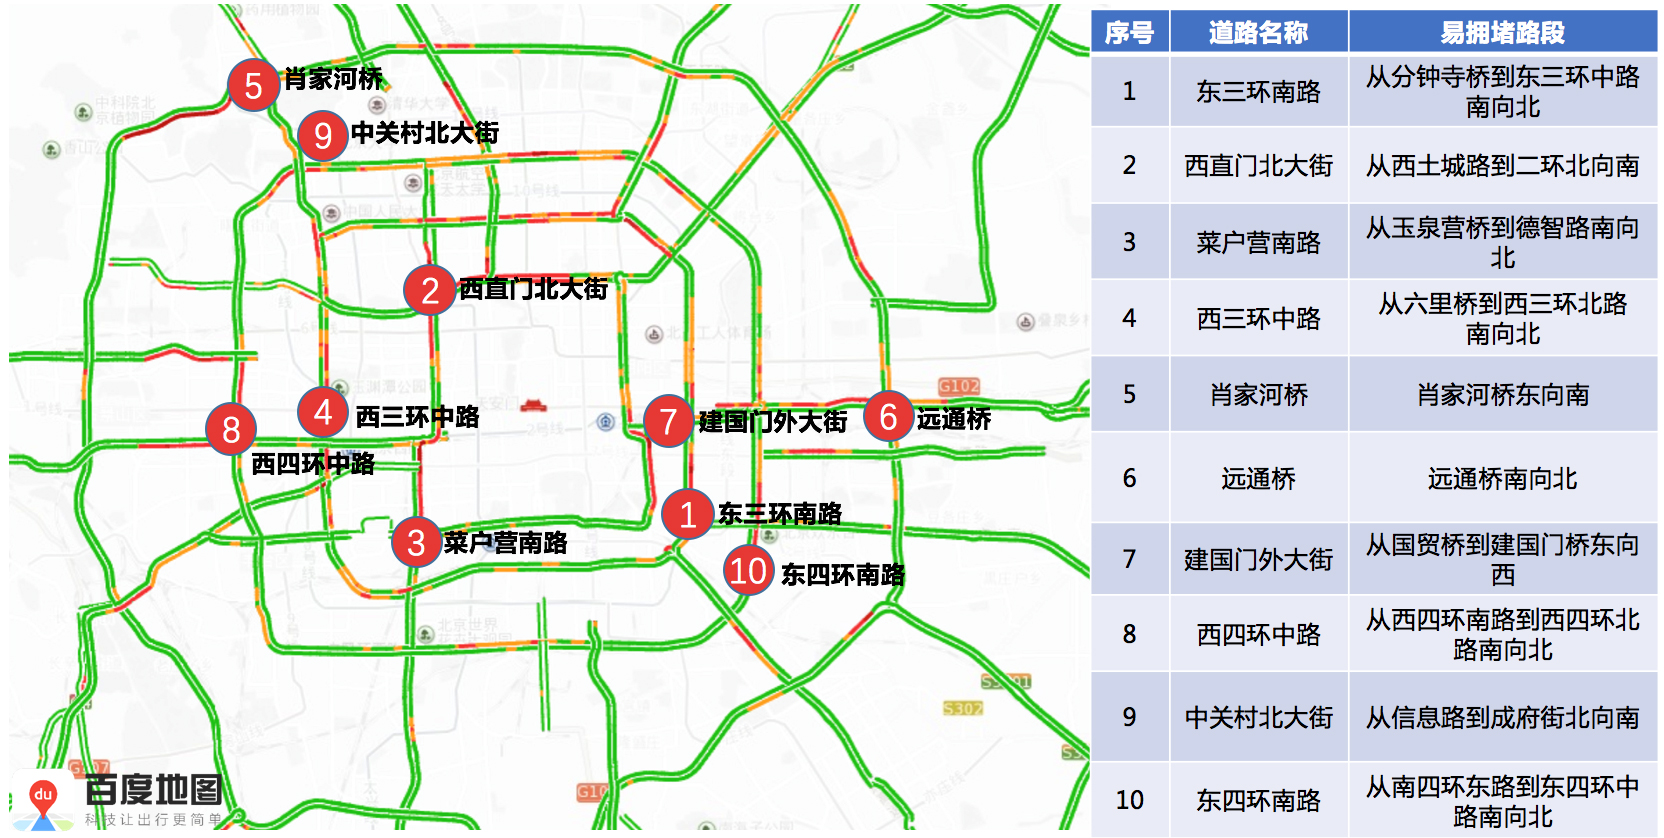 北京交警发布春运机场火车站交通趋势图 躲避拥堵必看